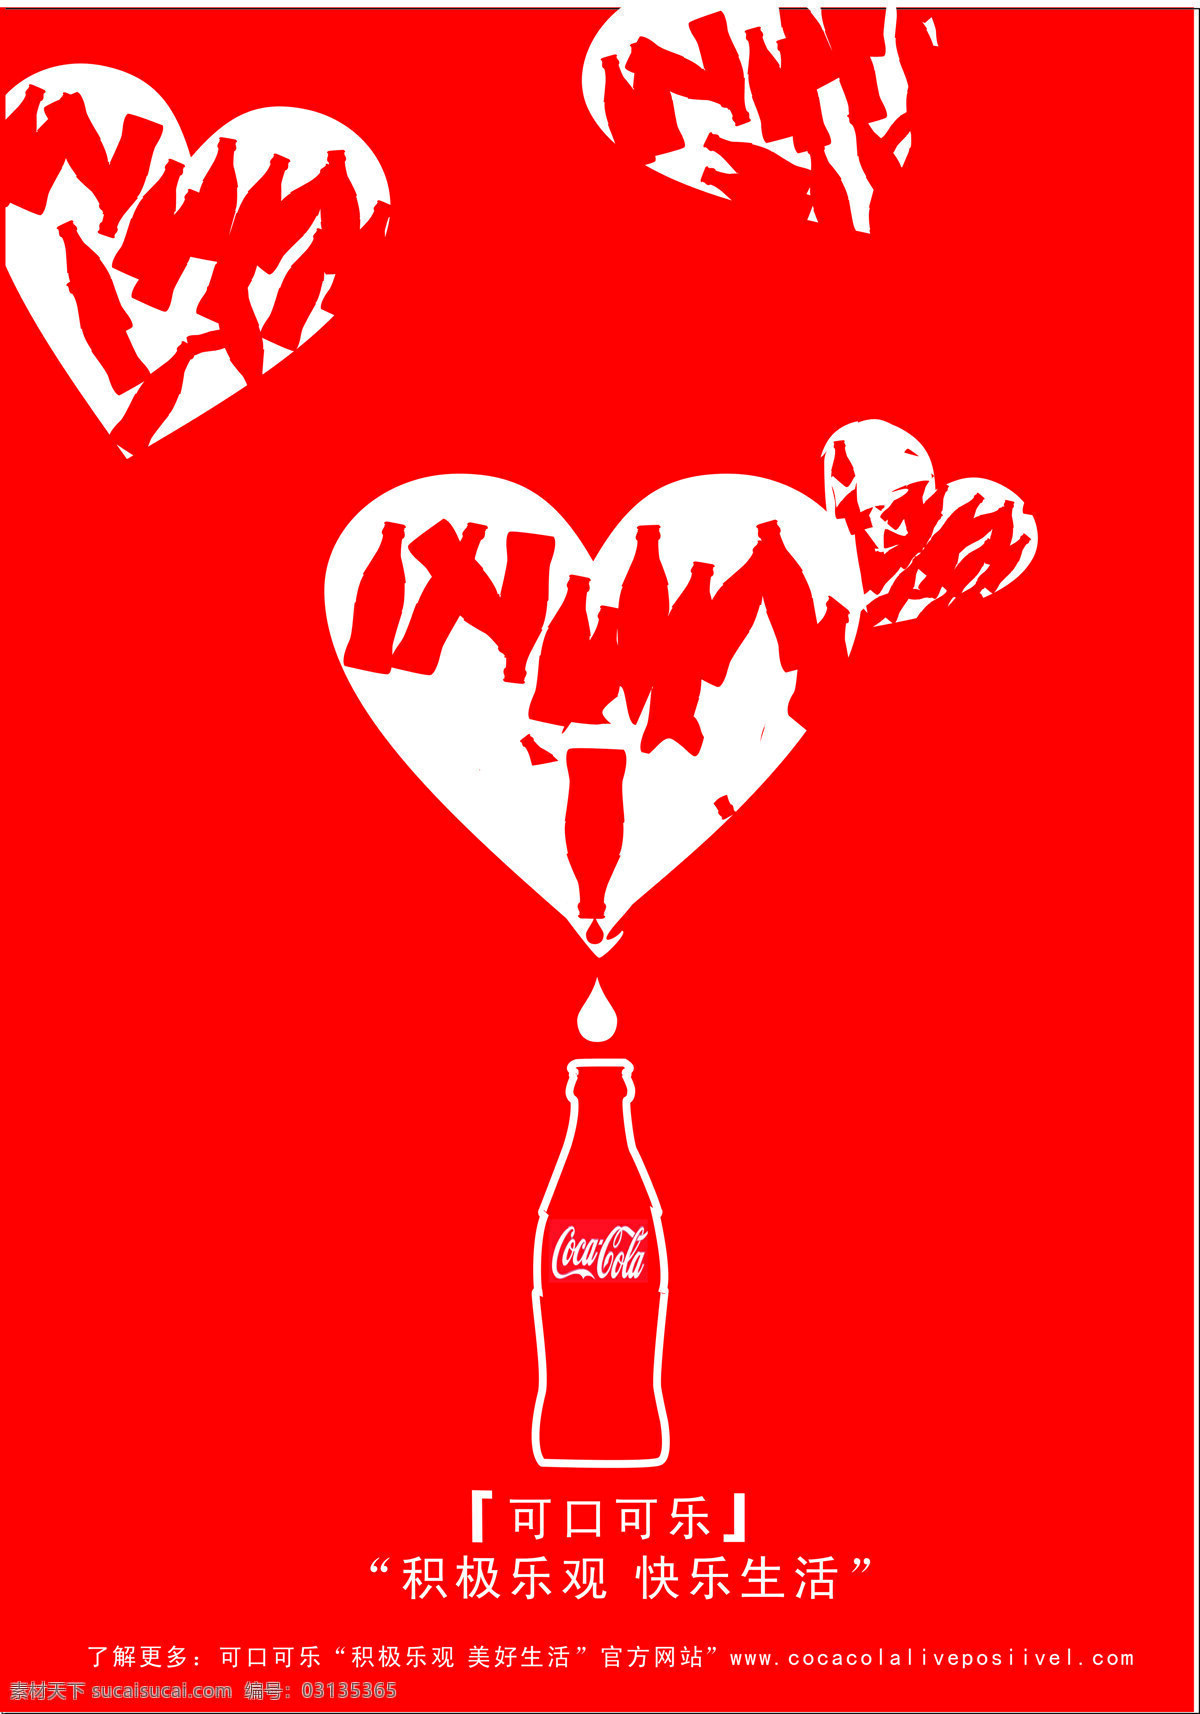 可口可乐 爱心 瓶子 招贴设计 设计素材 模板下载 海报 其他海报设计